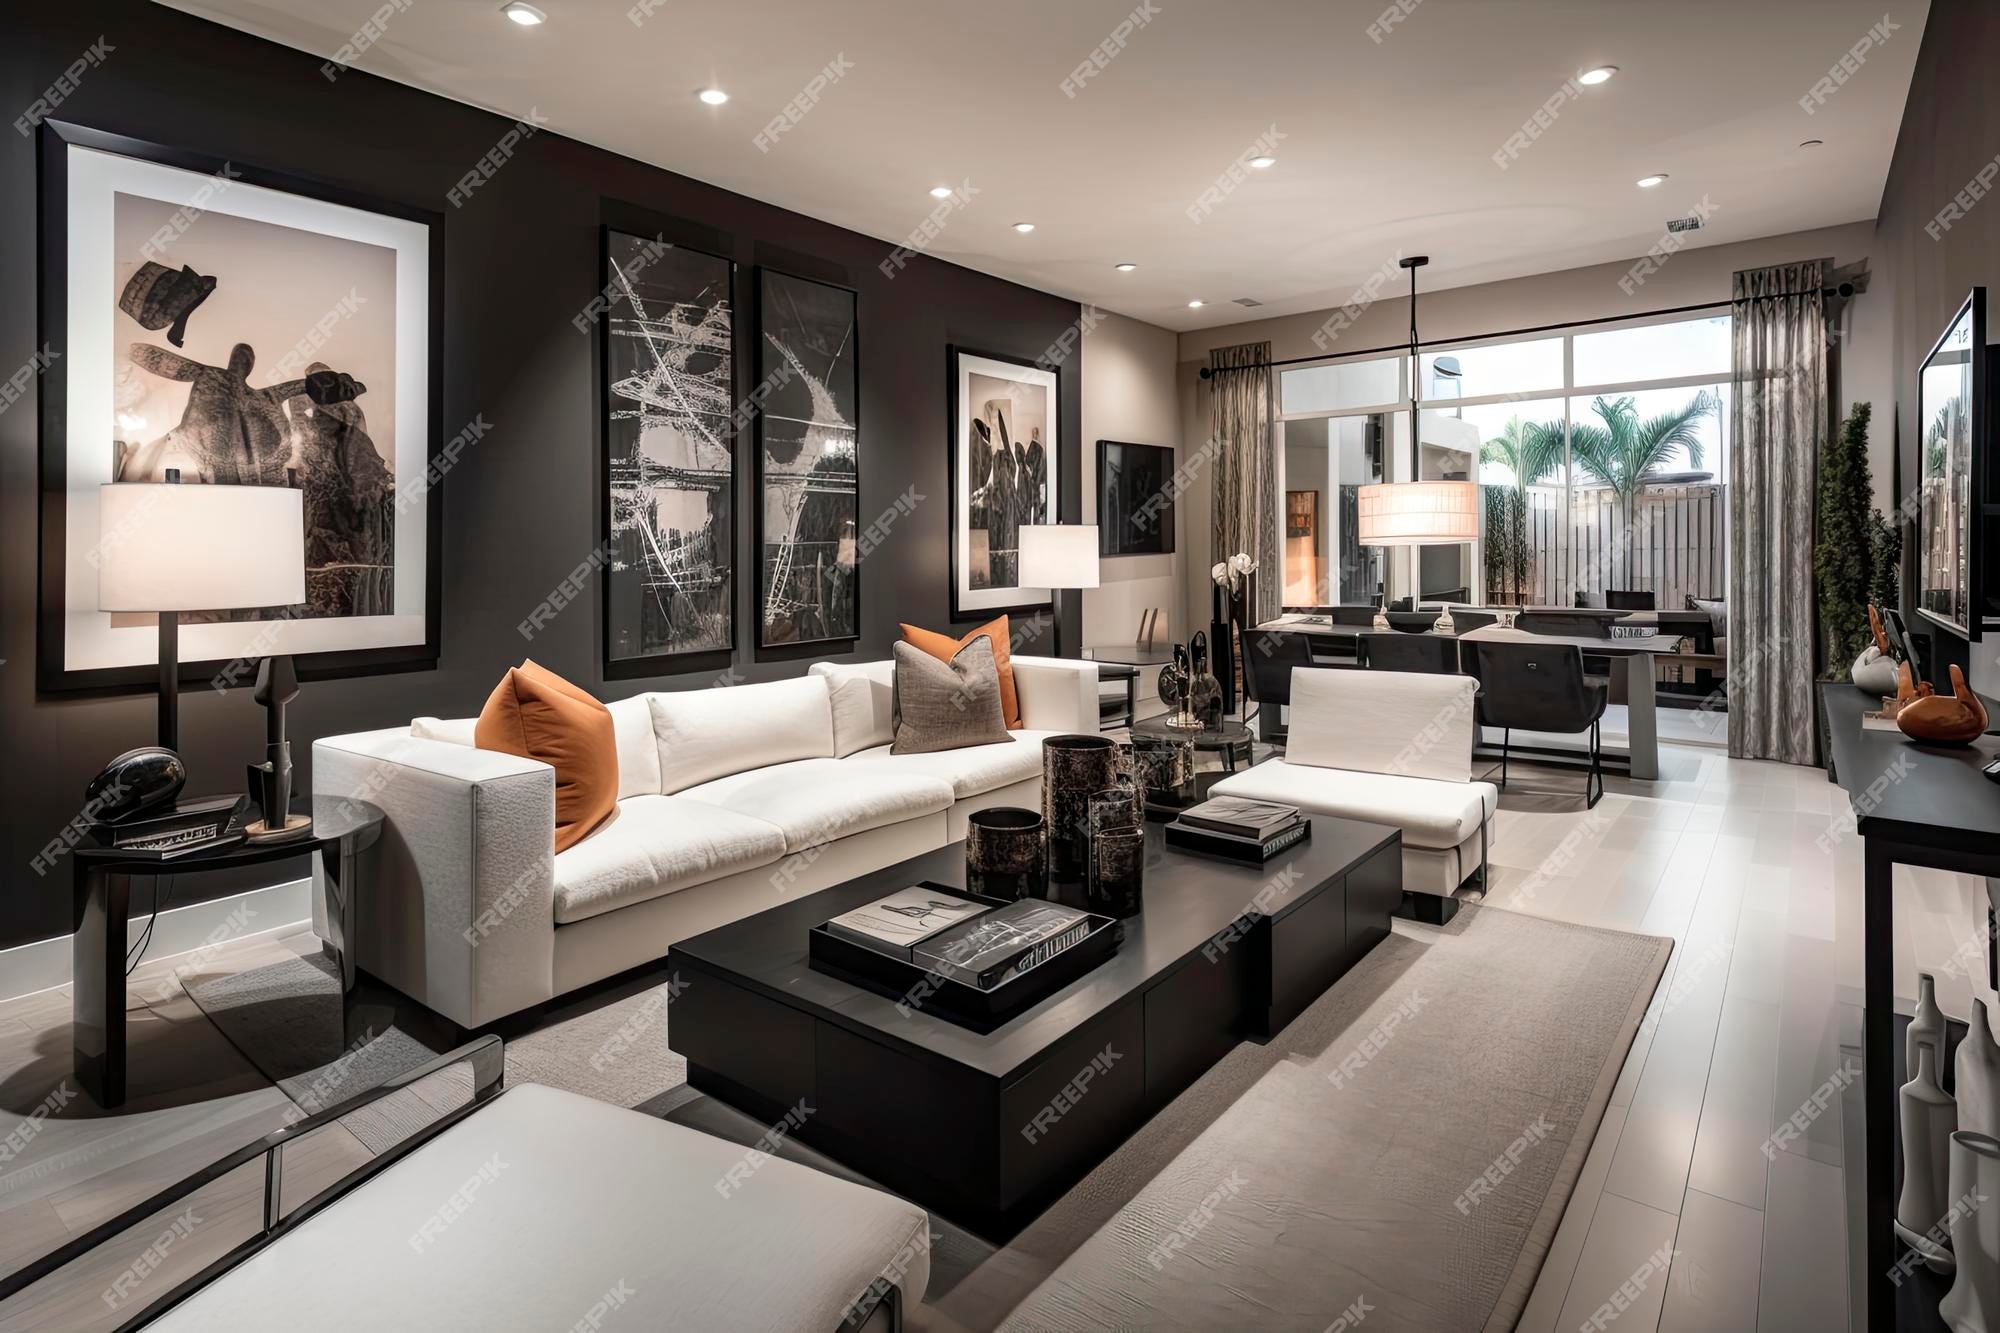 Interior moderno de espacio abierto con muebles de sofá modulares de diseño, mesas centro de madera, almohadas a cuadros, plantas y elegantes personales en una elegante decoración del hogar.